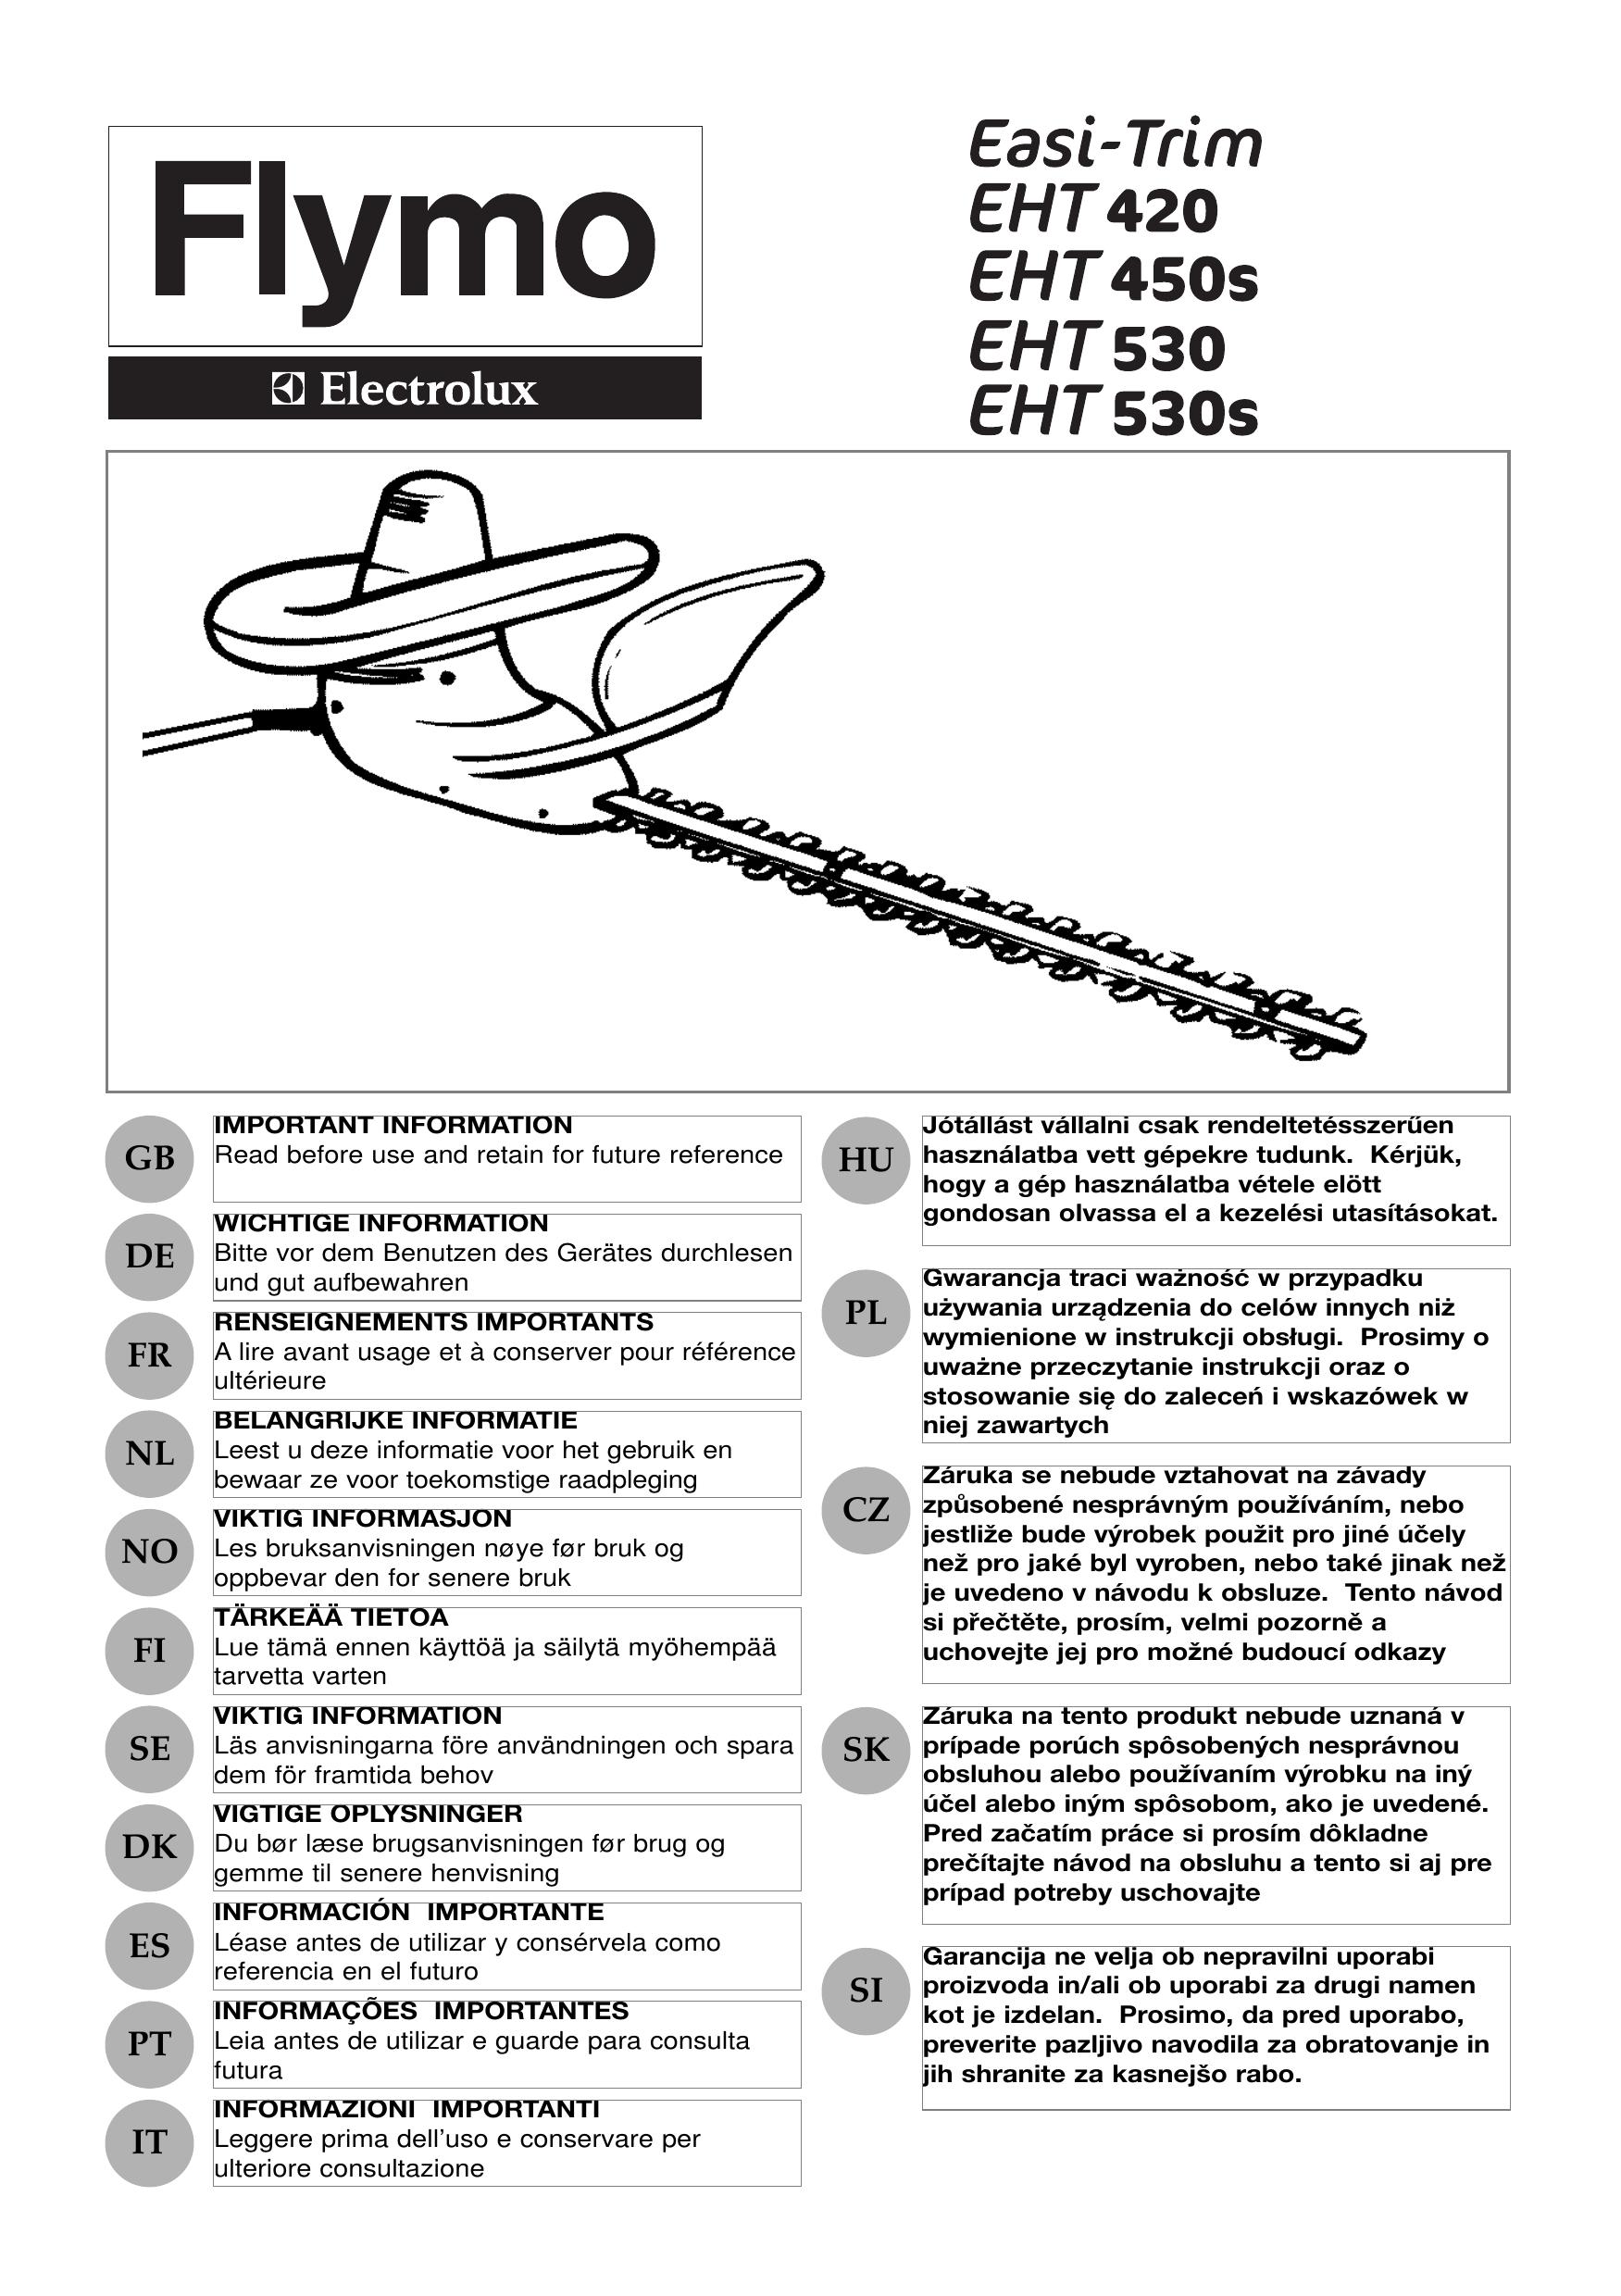 Flymo EHT 420 Trimmer User Manual